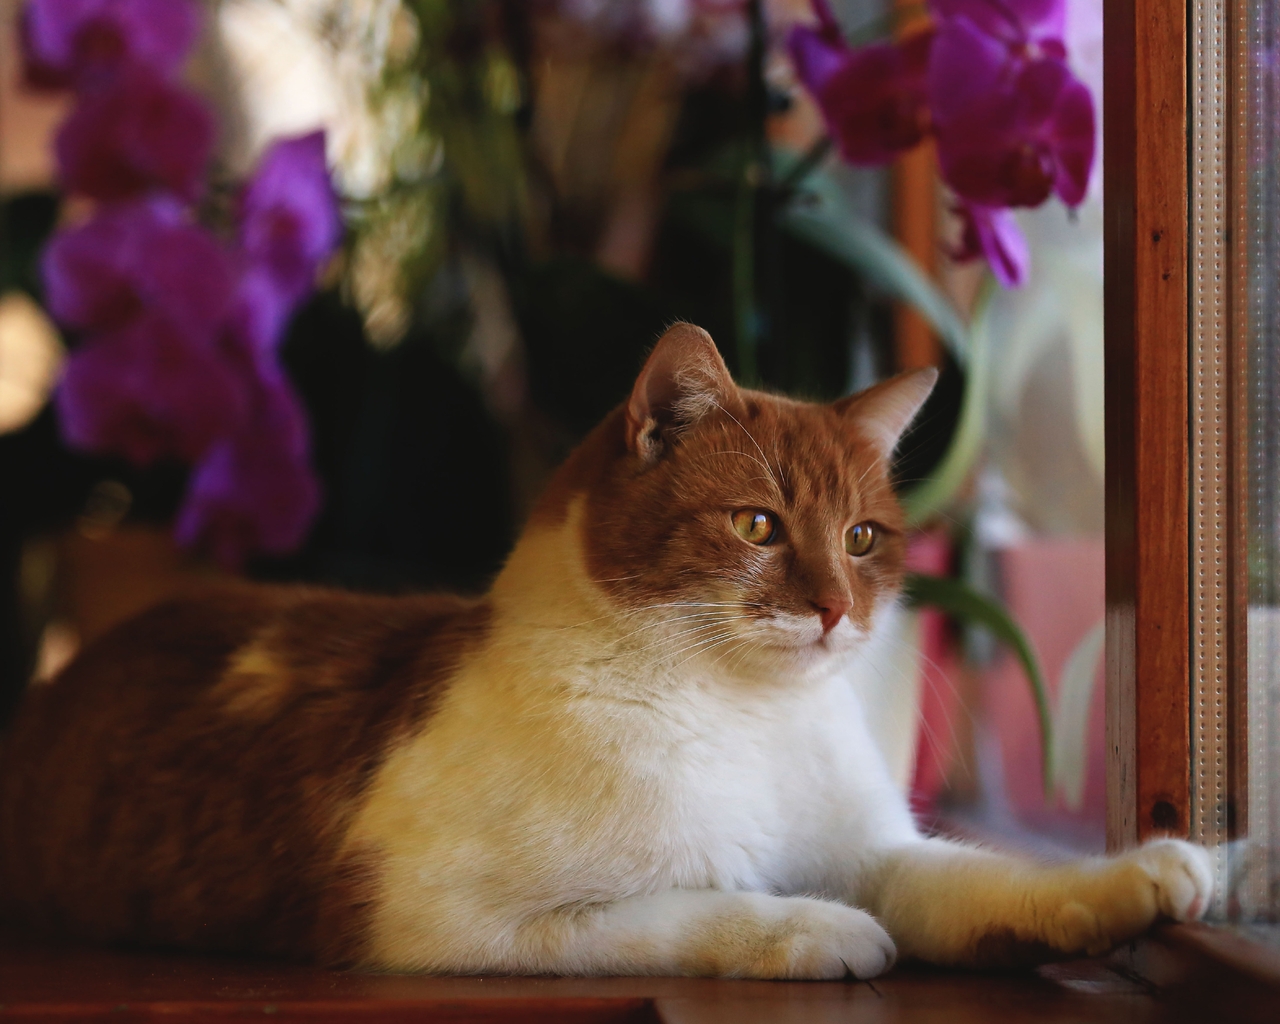 Image: Cat, red, muzzle, look, eyes, legs, fur, looking, window